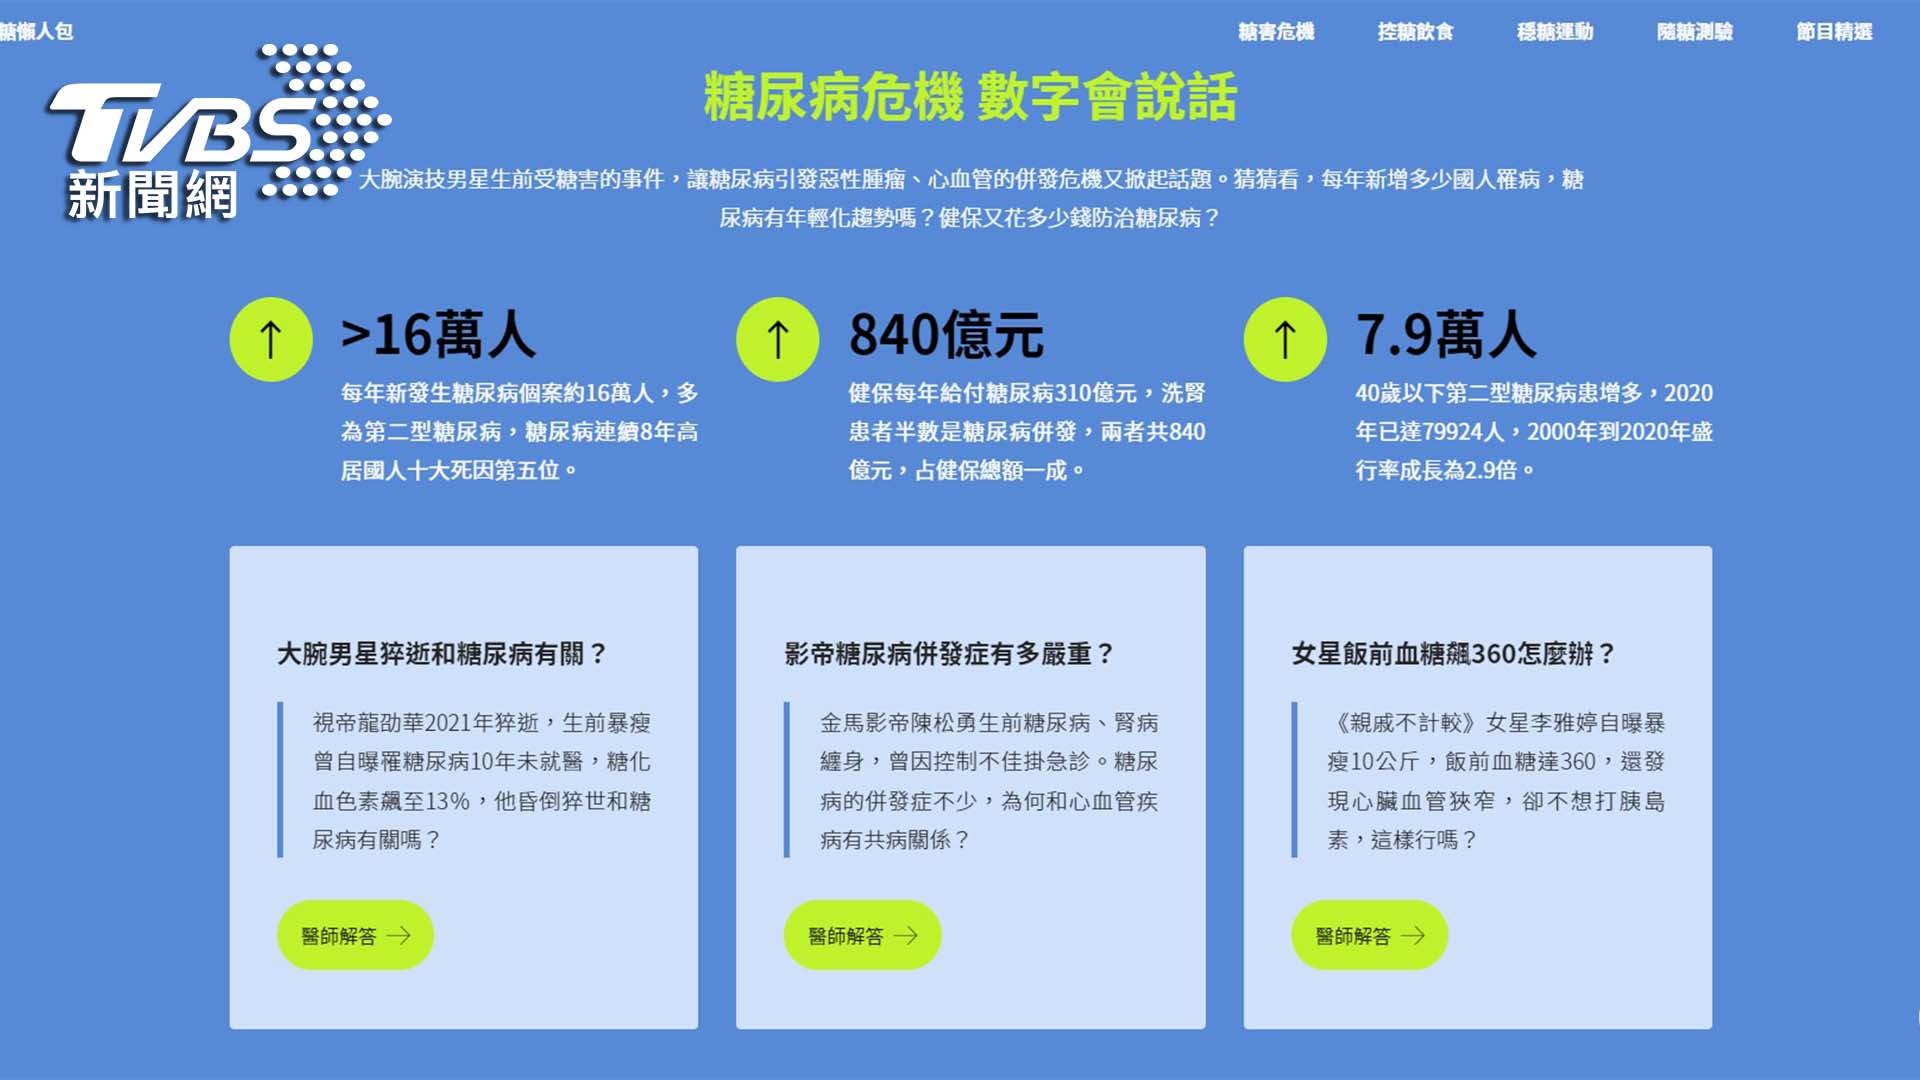 國內討論度最高的醫療節目TVBS《健康2.0》，特別推出「控糖懶人包」策展頁。（圖/TVBS提供)